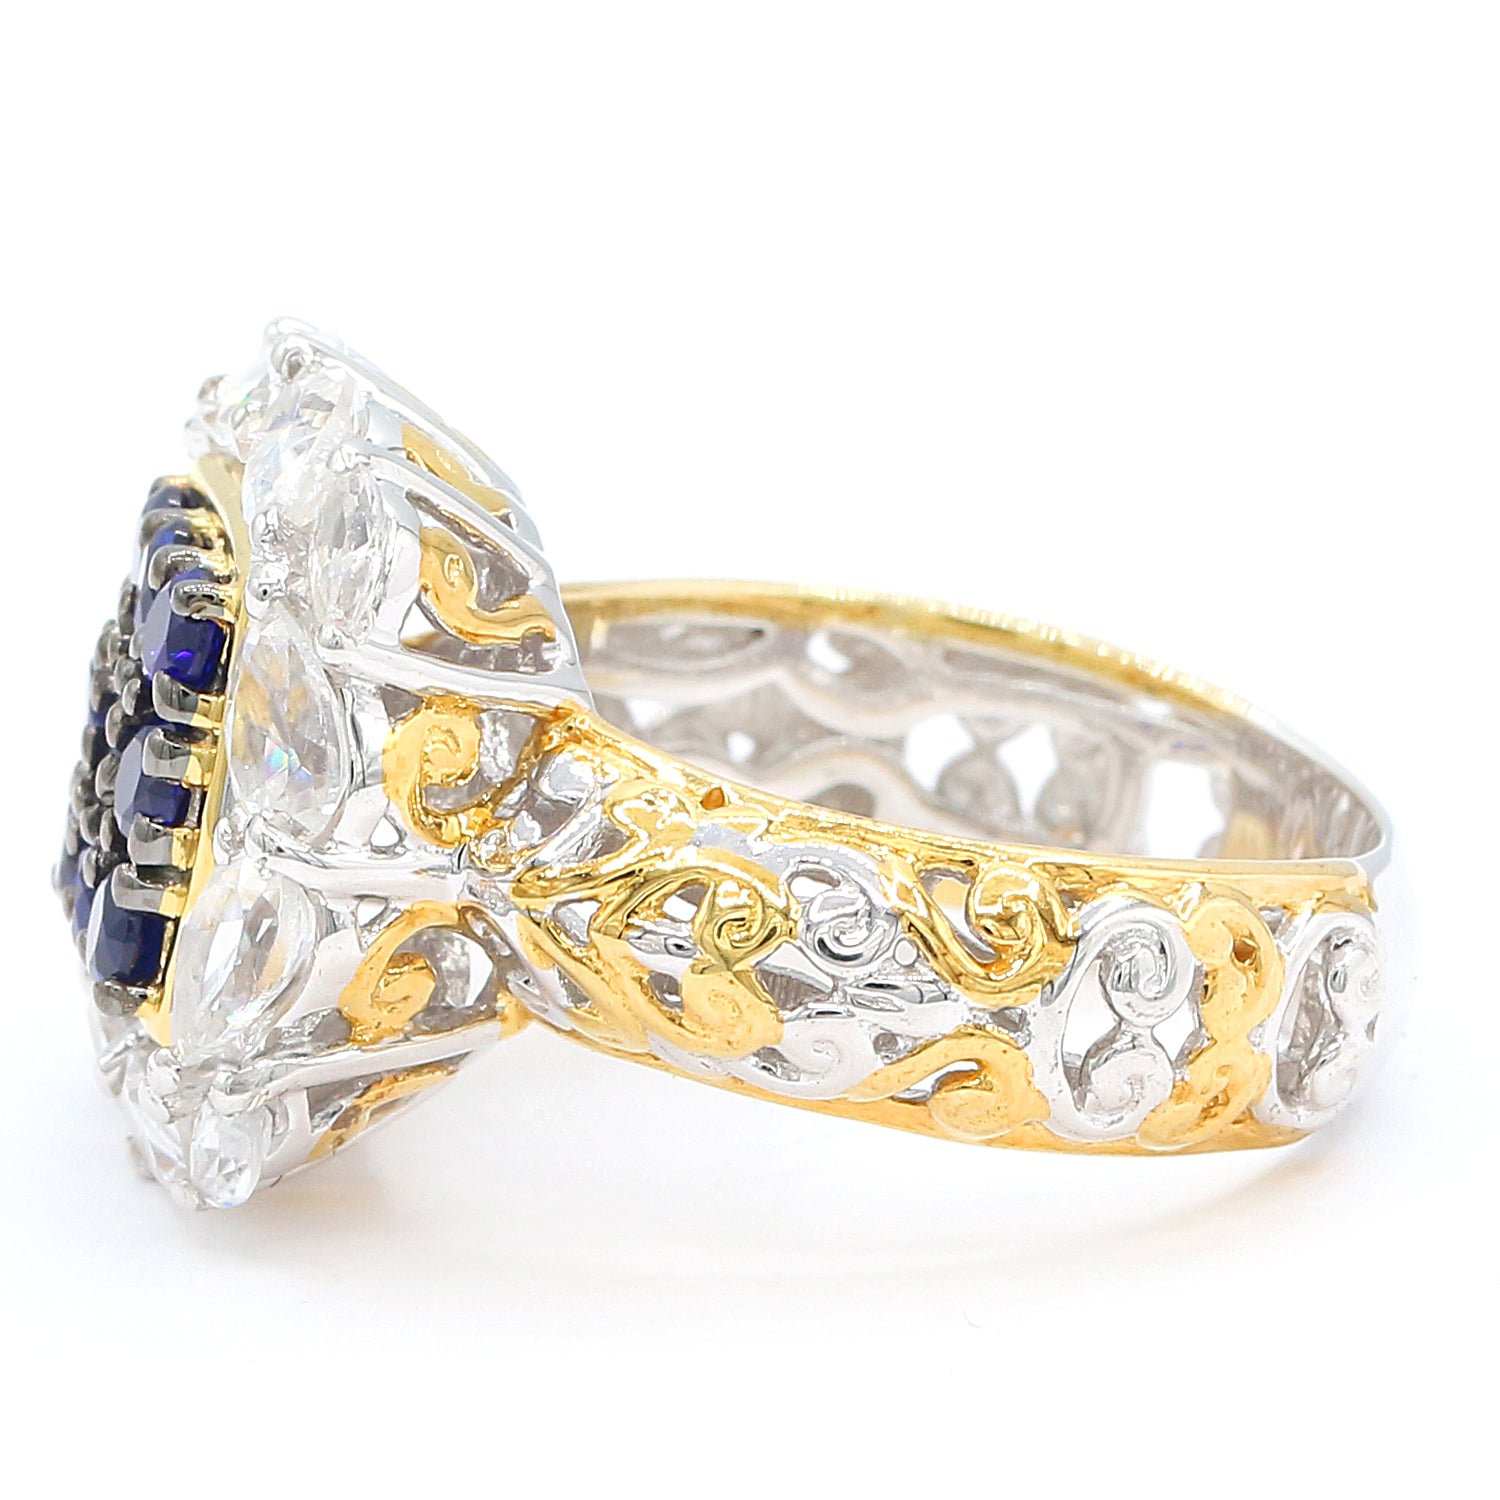 Gems en Vogue 4.16ctw Cobalt Blue Spinel & White Zircon Halo Ring